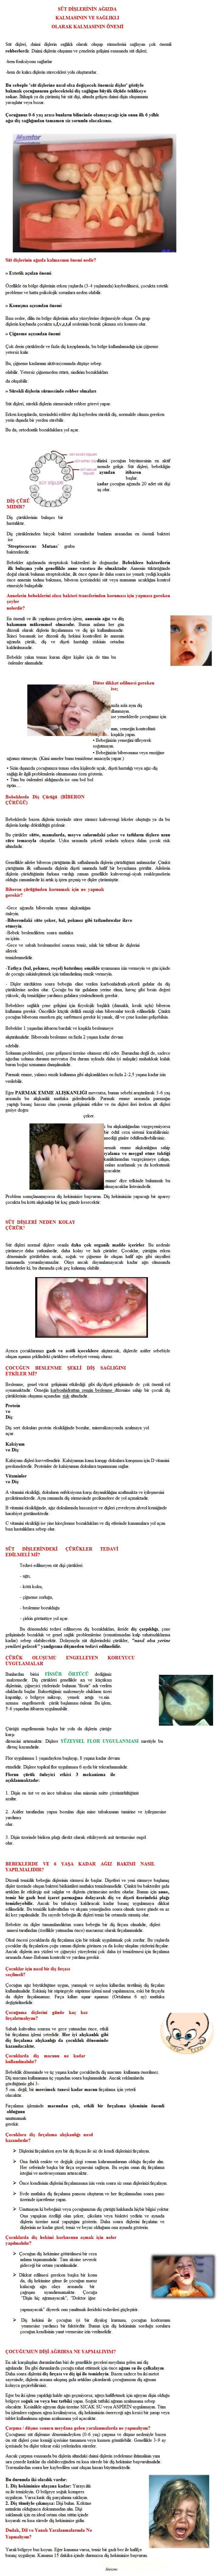 çocuklarda ağız ve diş sağlığı bakımı.jpg